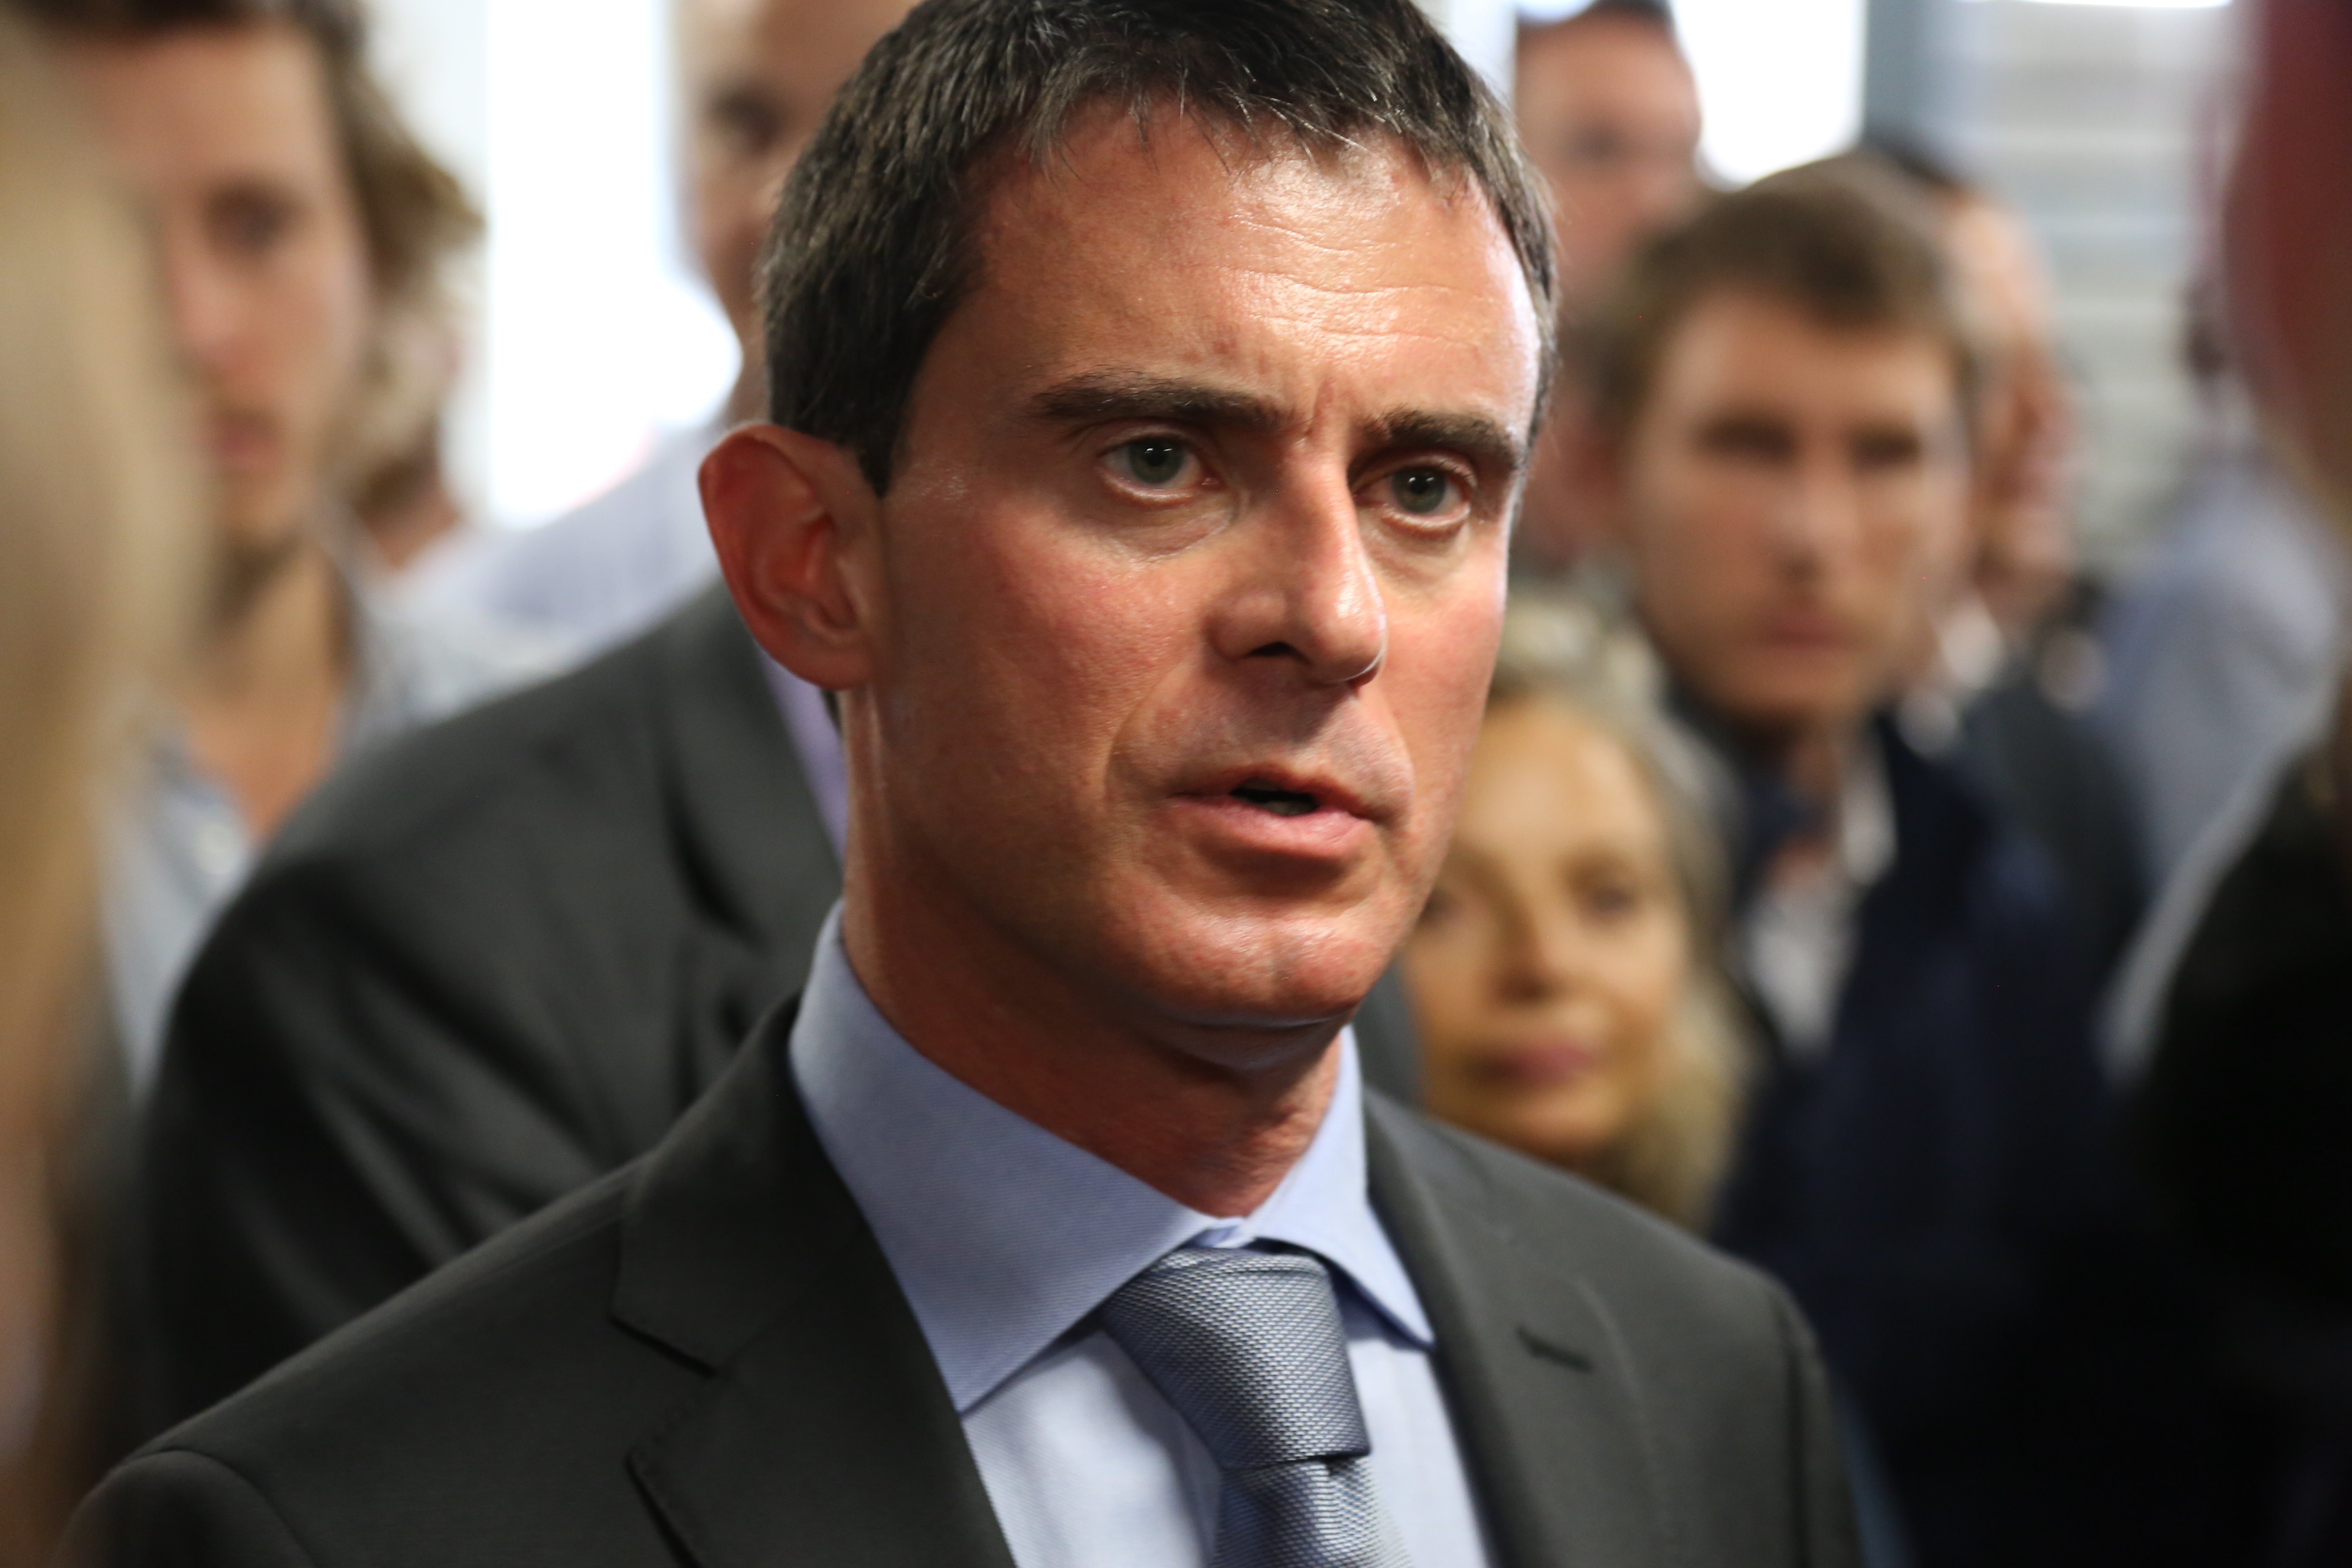 Esbroncada de Manuel Valls a l'elit unionista: "És culpa vostra. No heu fet res"